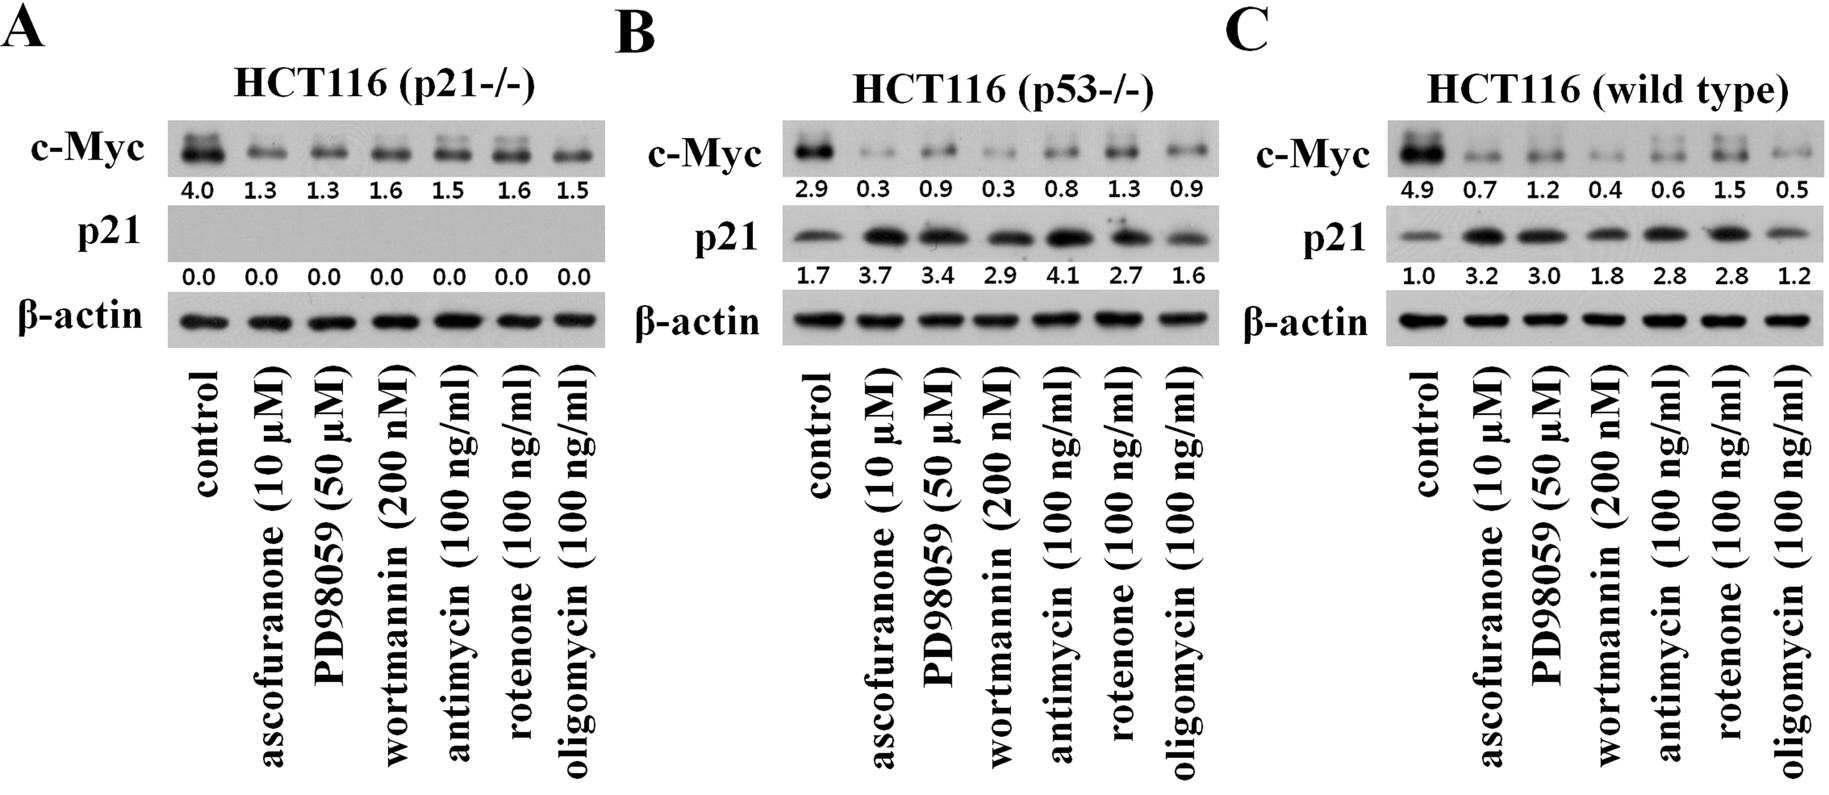 미토콘드리아 호흡저해제 및 다양한 키나아제 저해제에 의한 c-Myc과 p21의 발현조절 양상